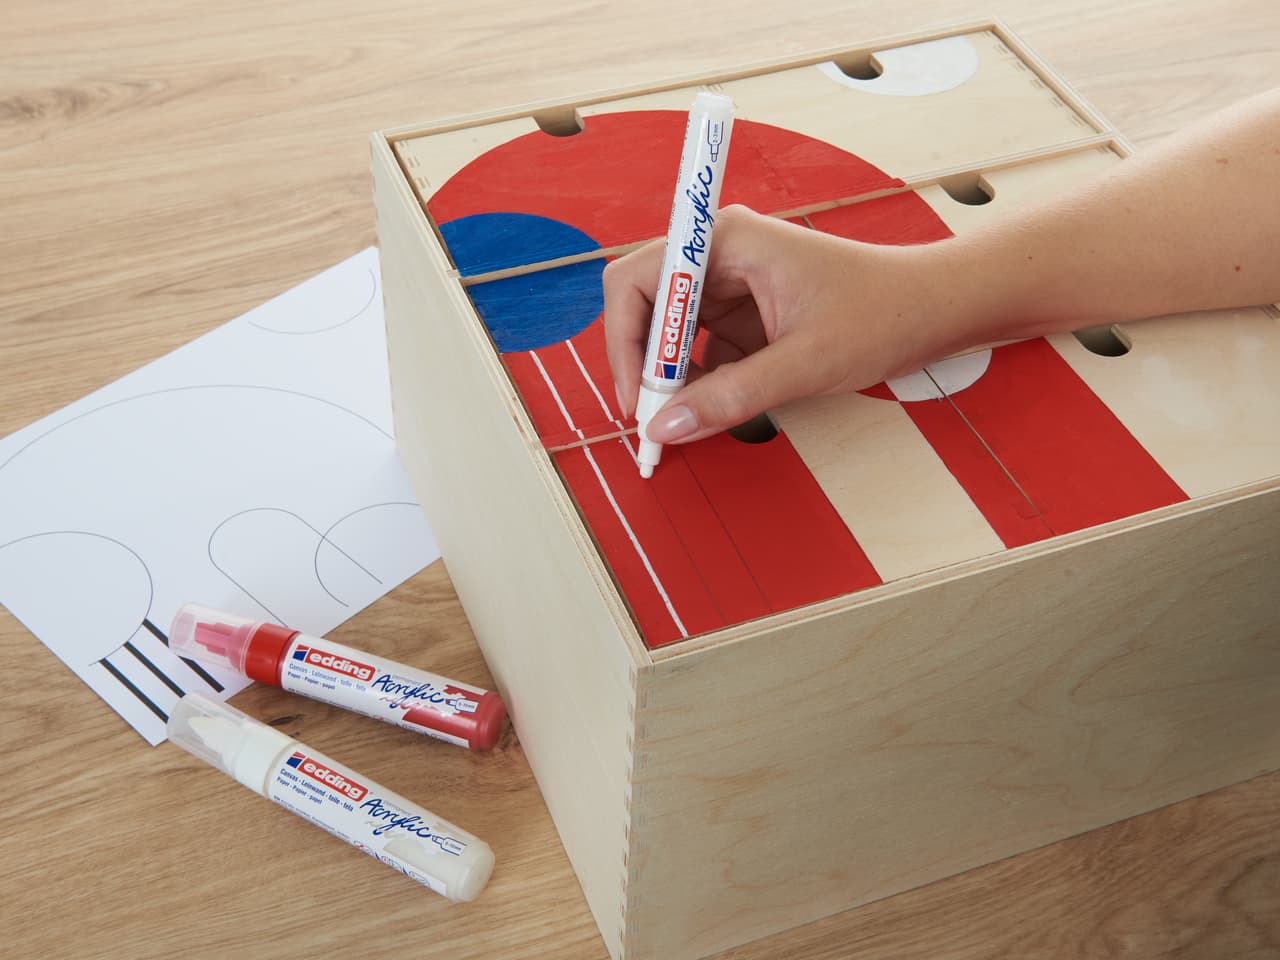 Handzeichnen eines roten und blauen Designs auf einem Cornhole-Holzbrett mit edding 5100 Acrylmarker medium 5er-Set, mit zusätzlichen Farbmarkern und einer daneben liegenden Skizze.